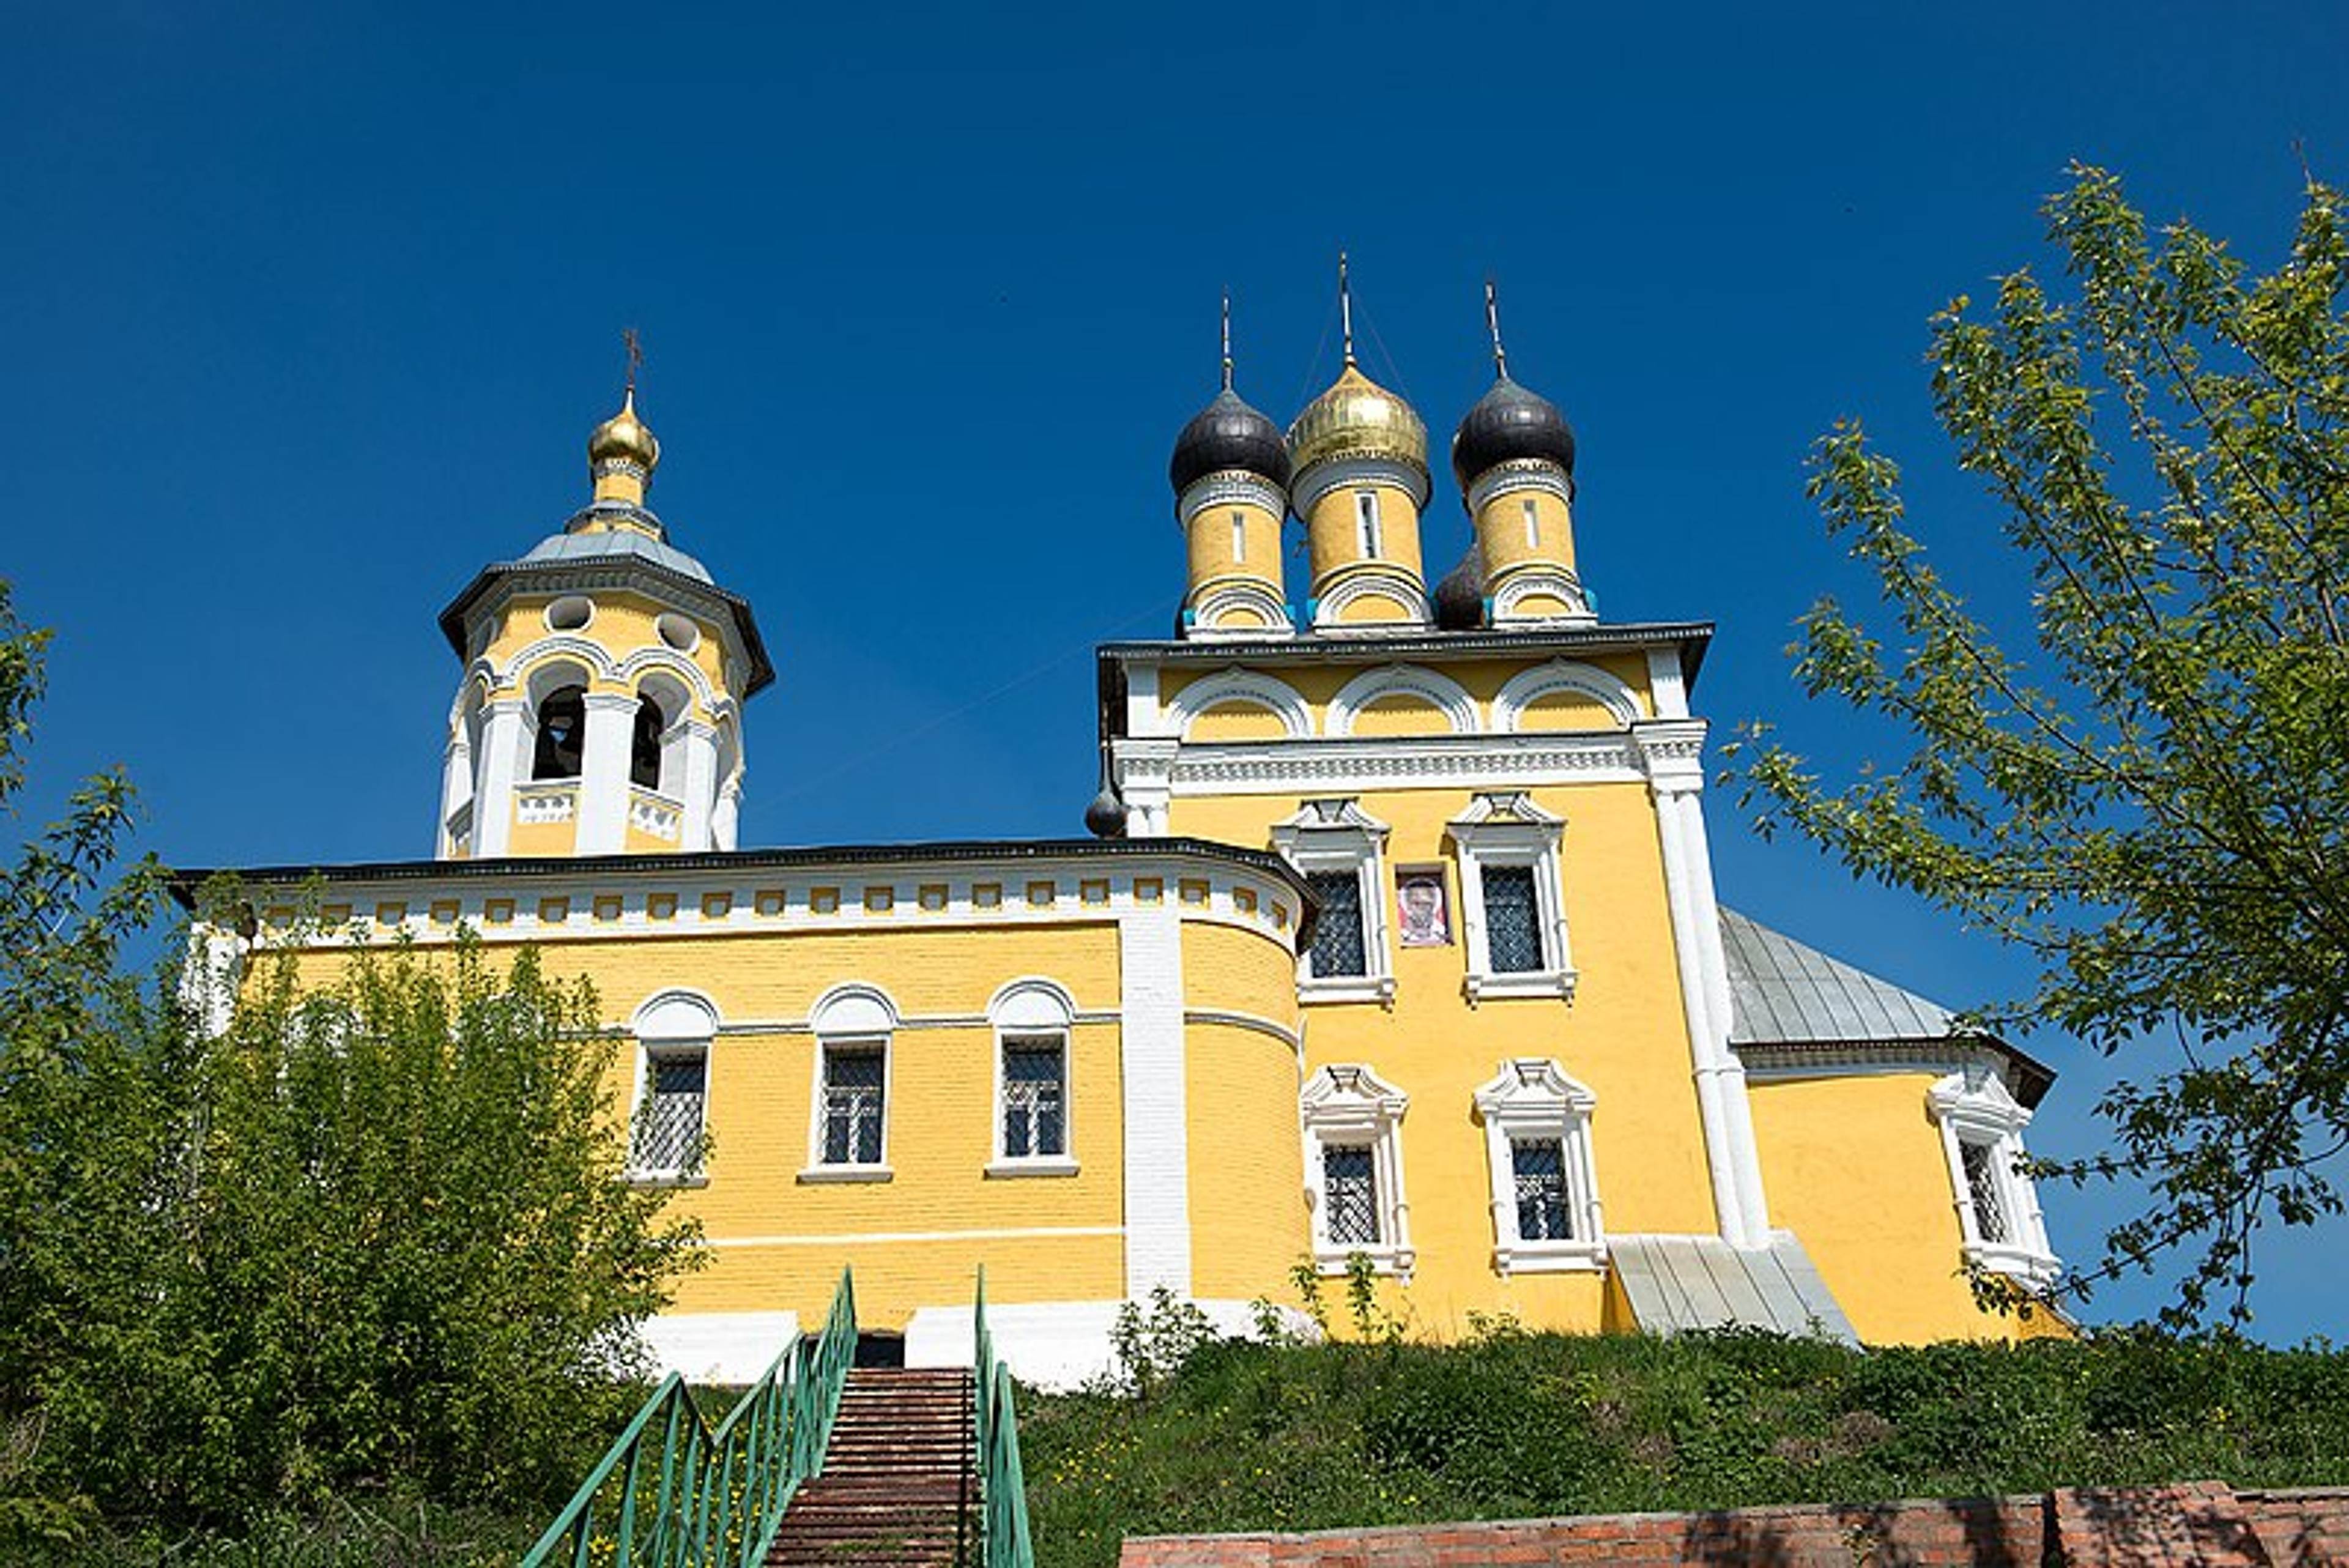 Nicolo-Naberezhnaya Church